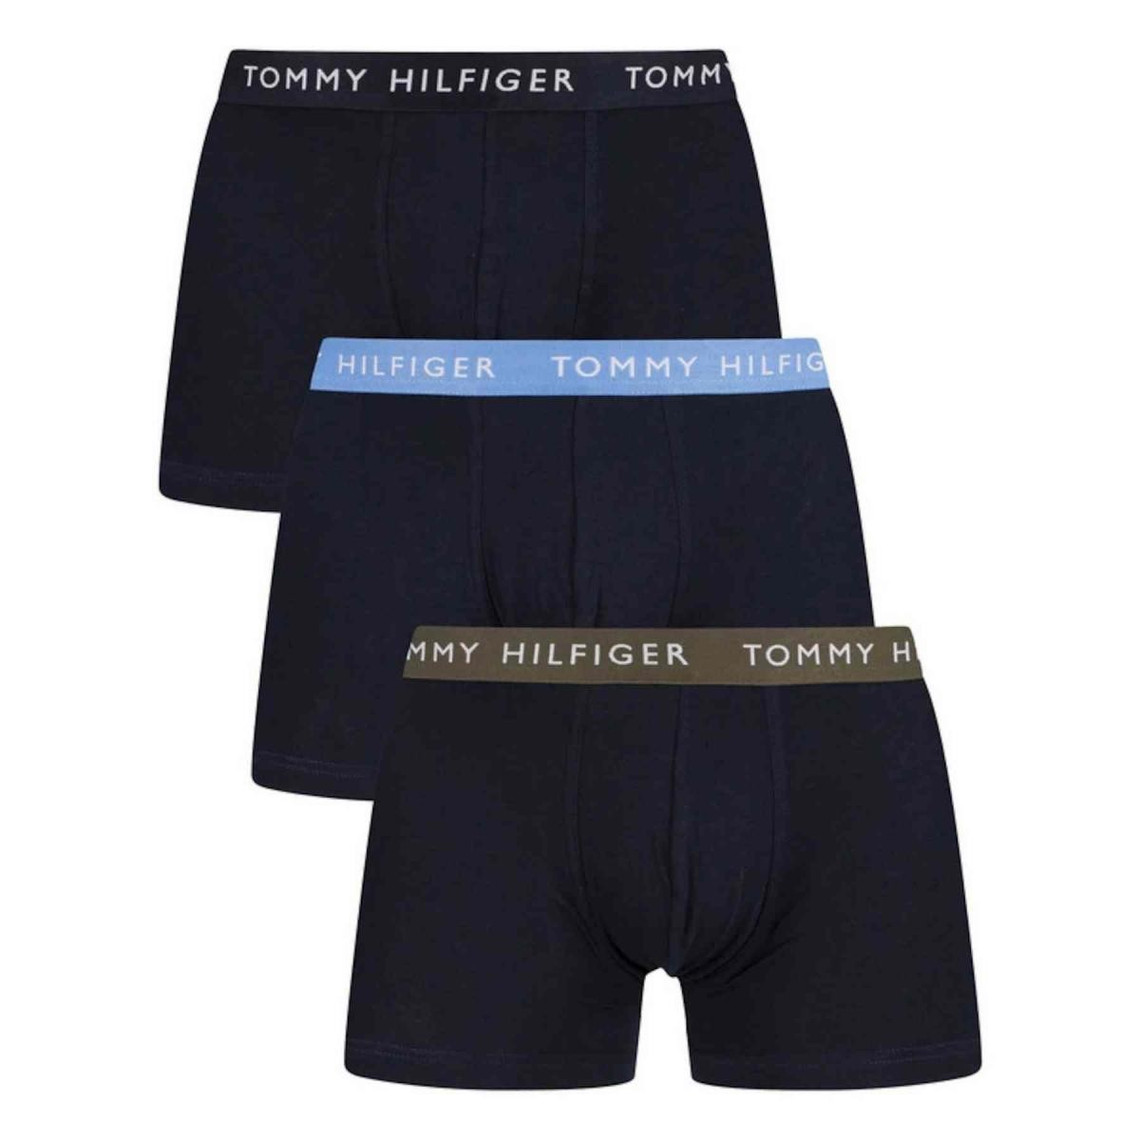 Visiter la boutique Tommy HilfigerTommy Hilfiger Boxer Homme Lot de 3 